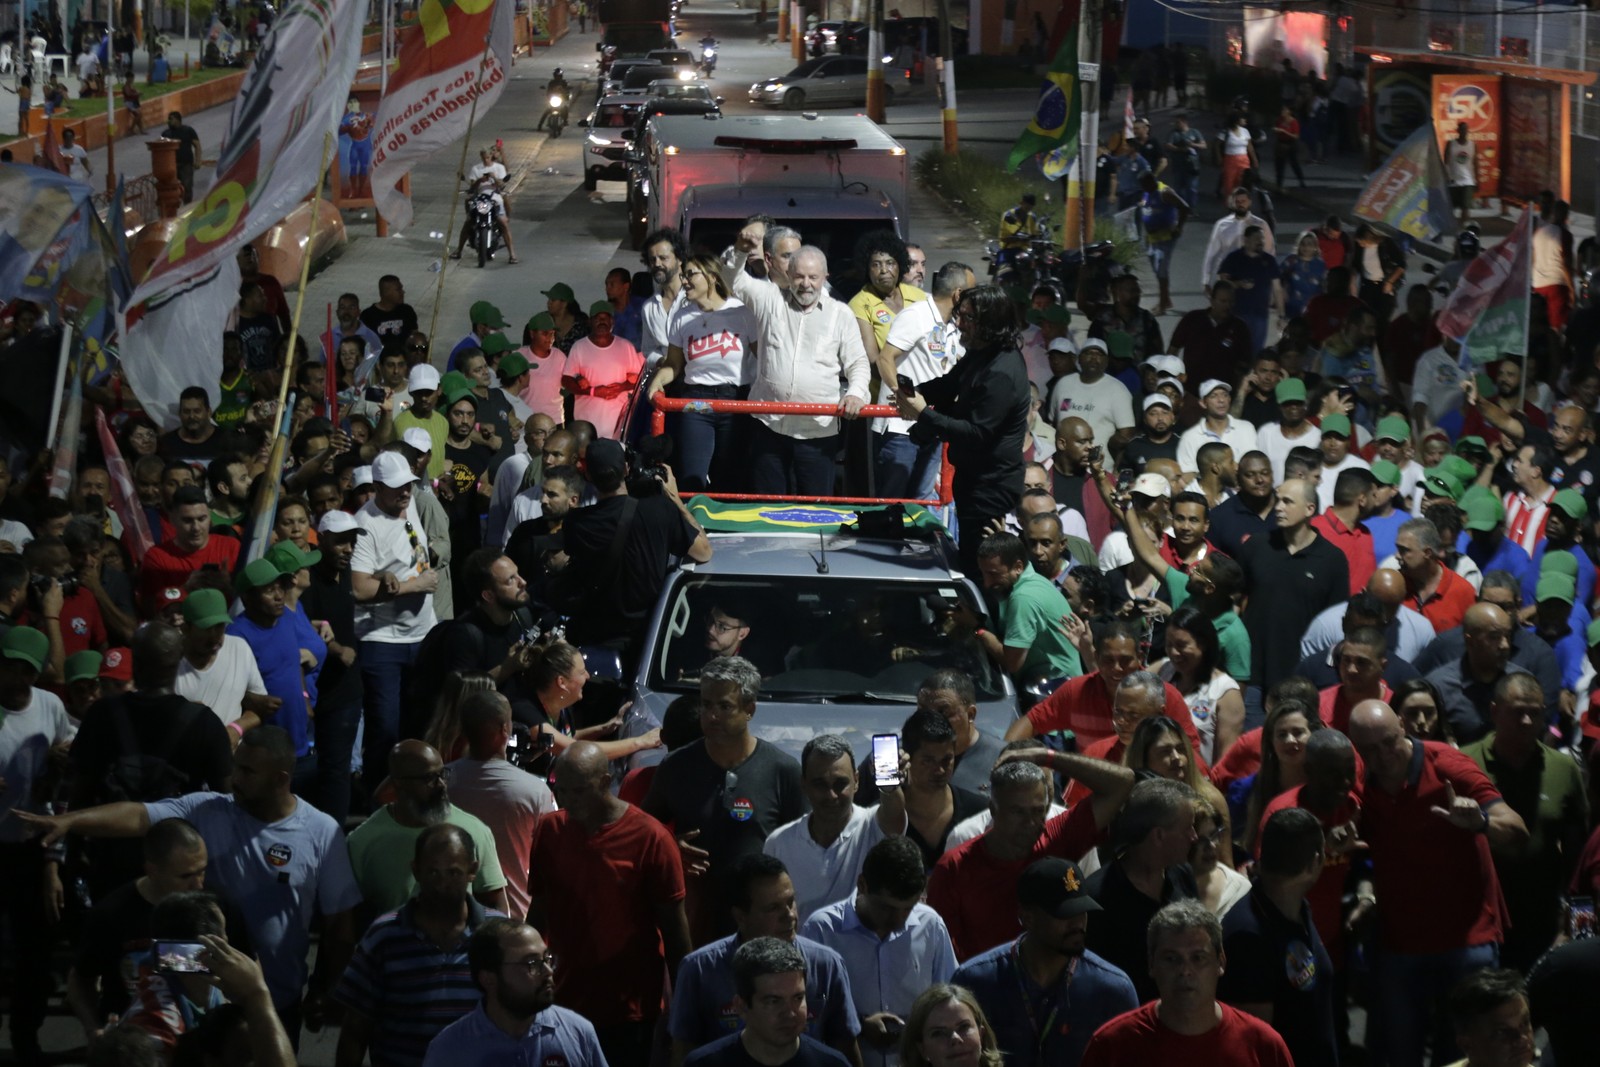 O ex-presidente Luiz Inácio Lula da Silva (PT) em ato de campanha em Belford Roxo, na Baixada Fluminense — Foto: Domingos Peixoto/Agência O Globo 